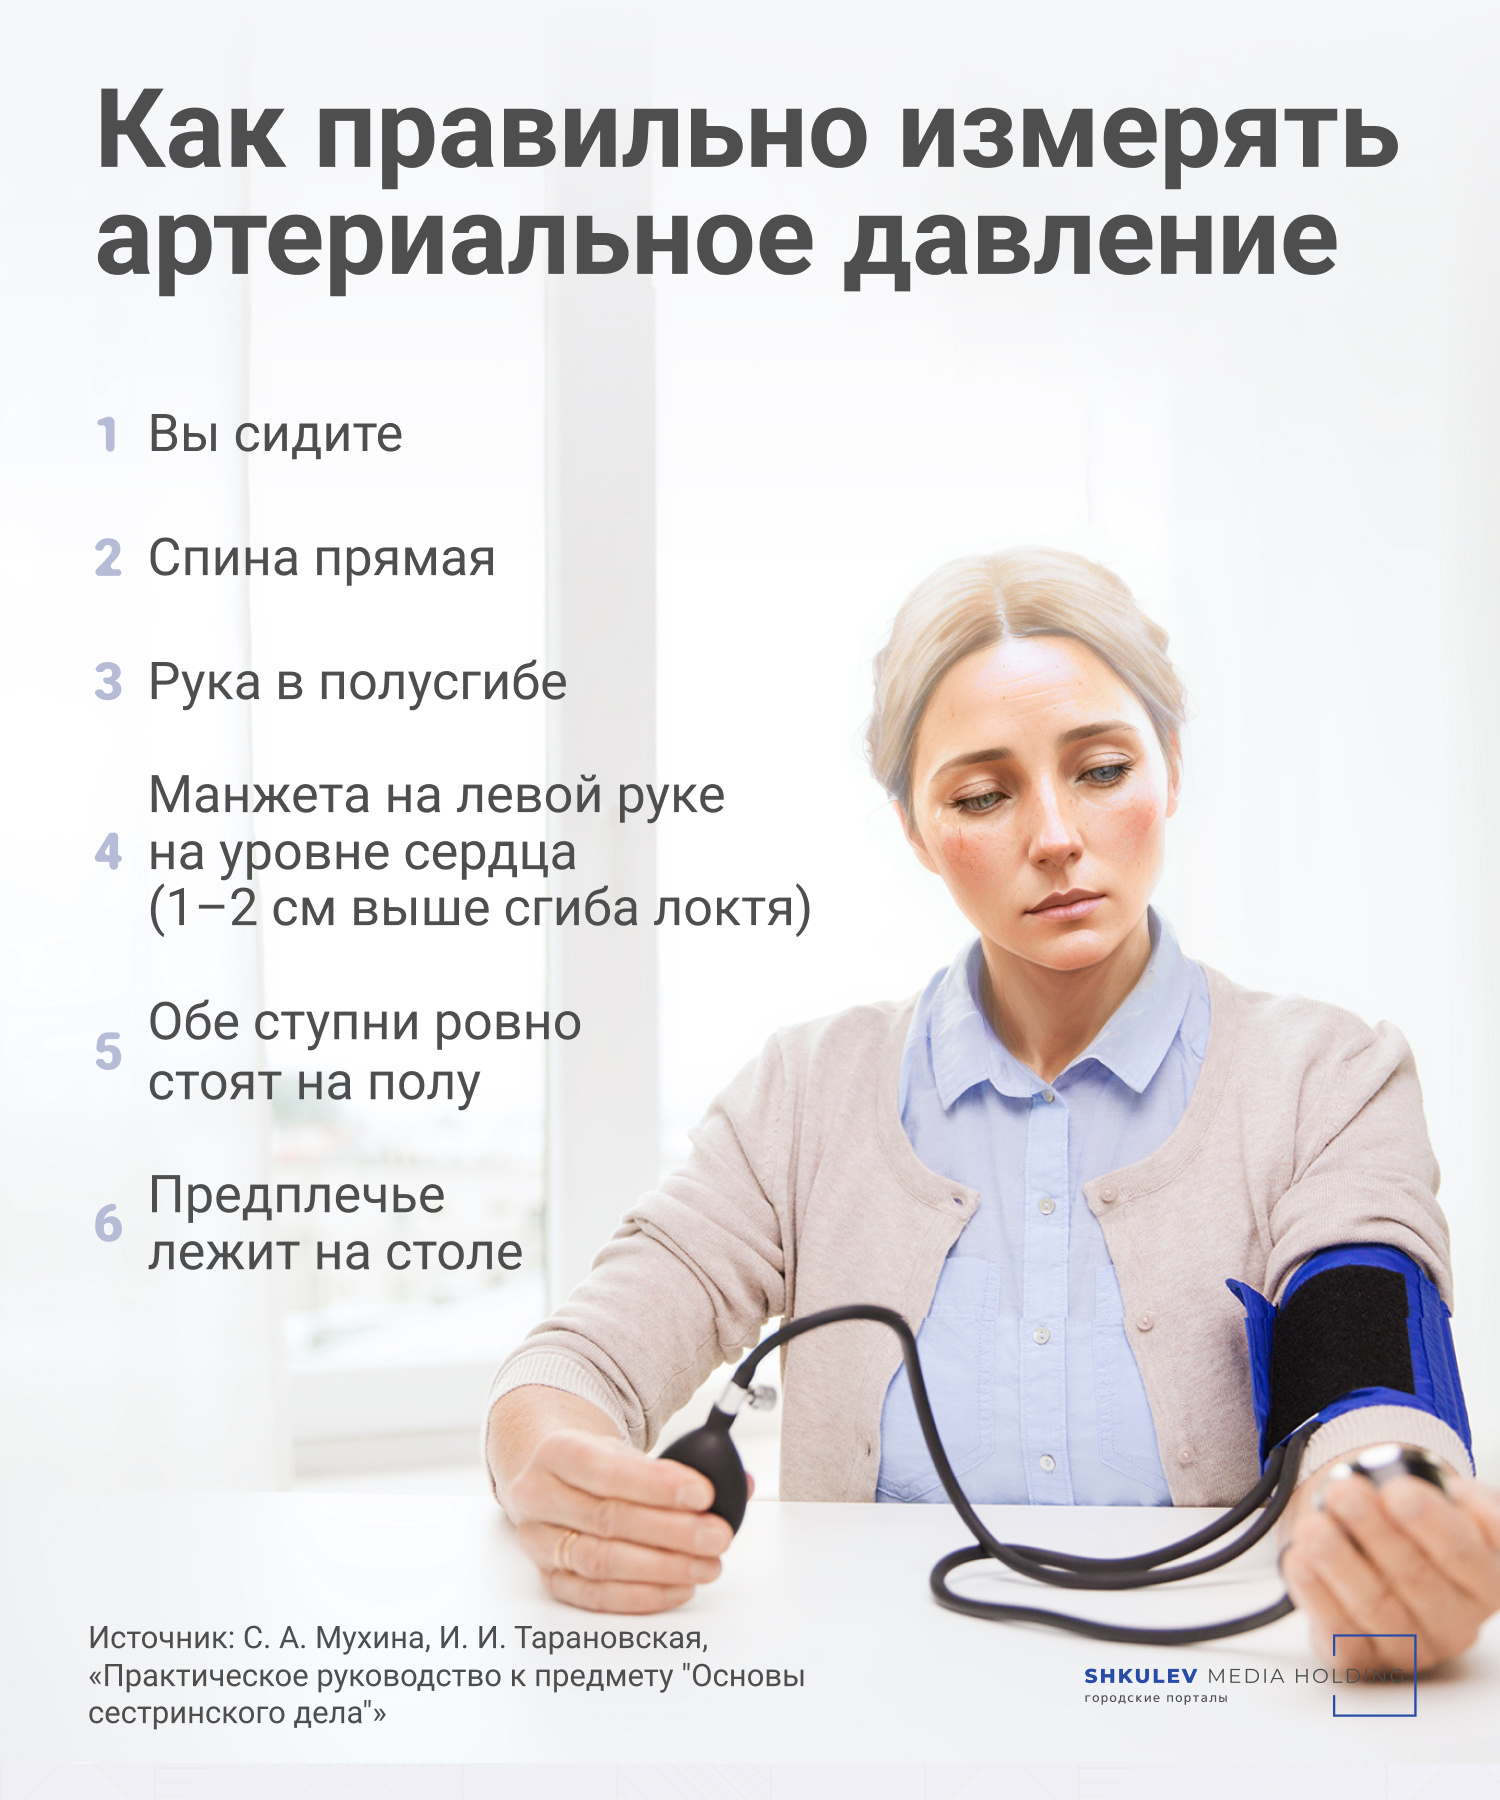 Низкое давление и высокий пульс - Кардиология - - Здоровье centerforstrategy.ru